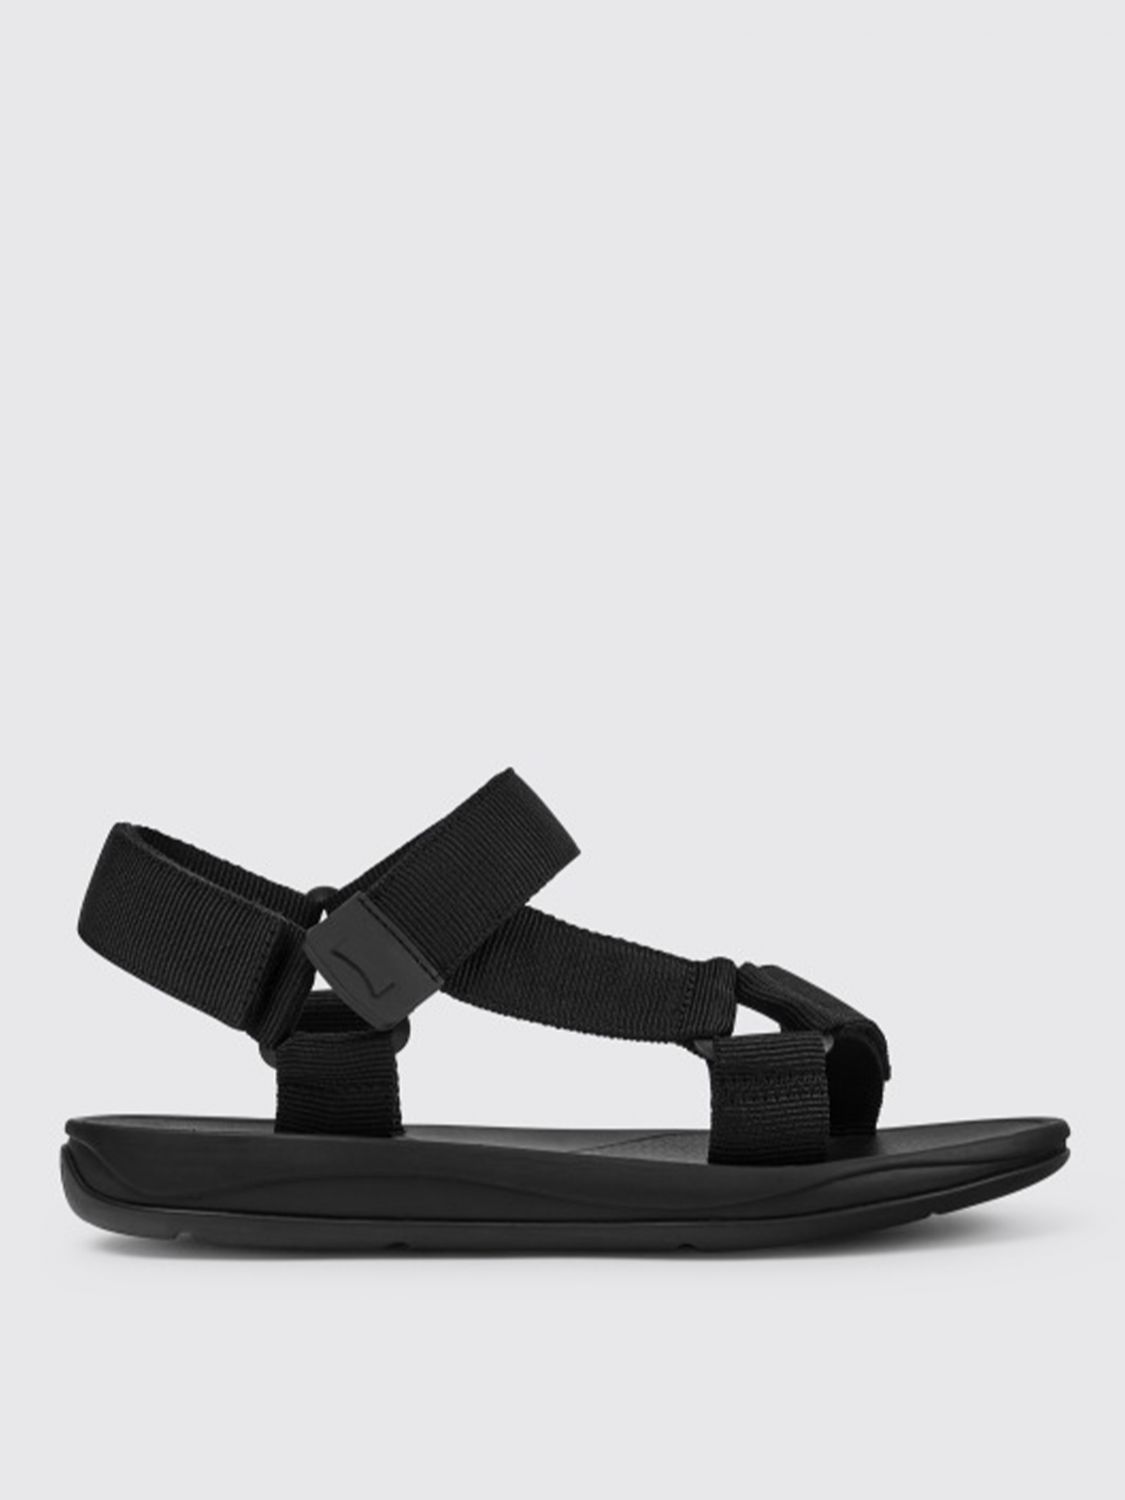 Camper Outlet: Match sandals in recycled PET - Black | Camper sandals ...